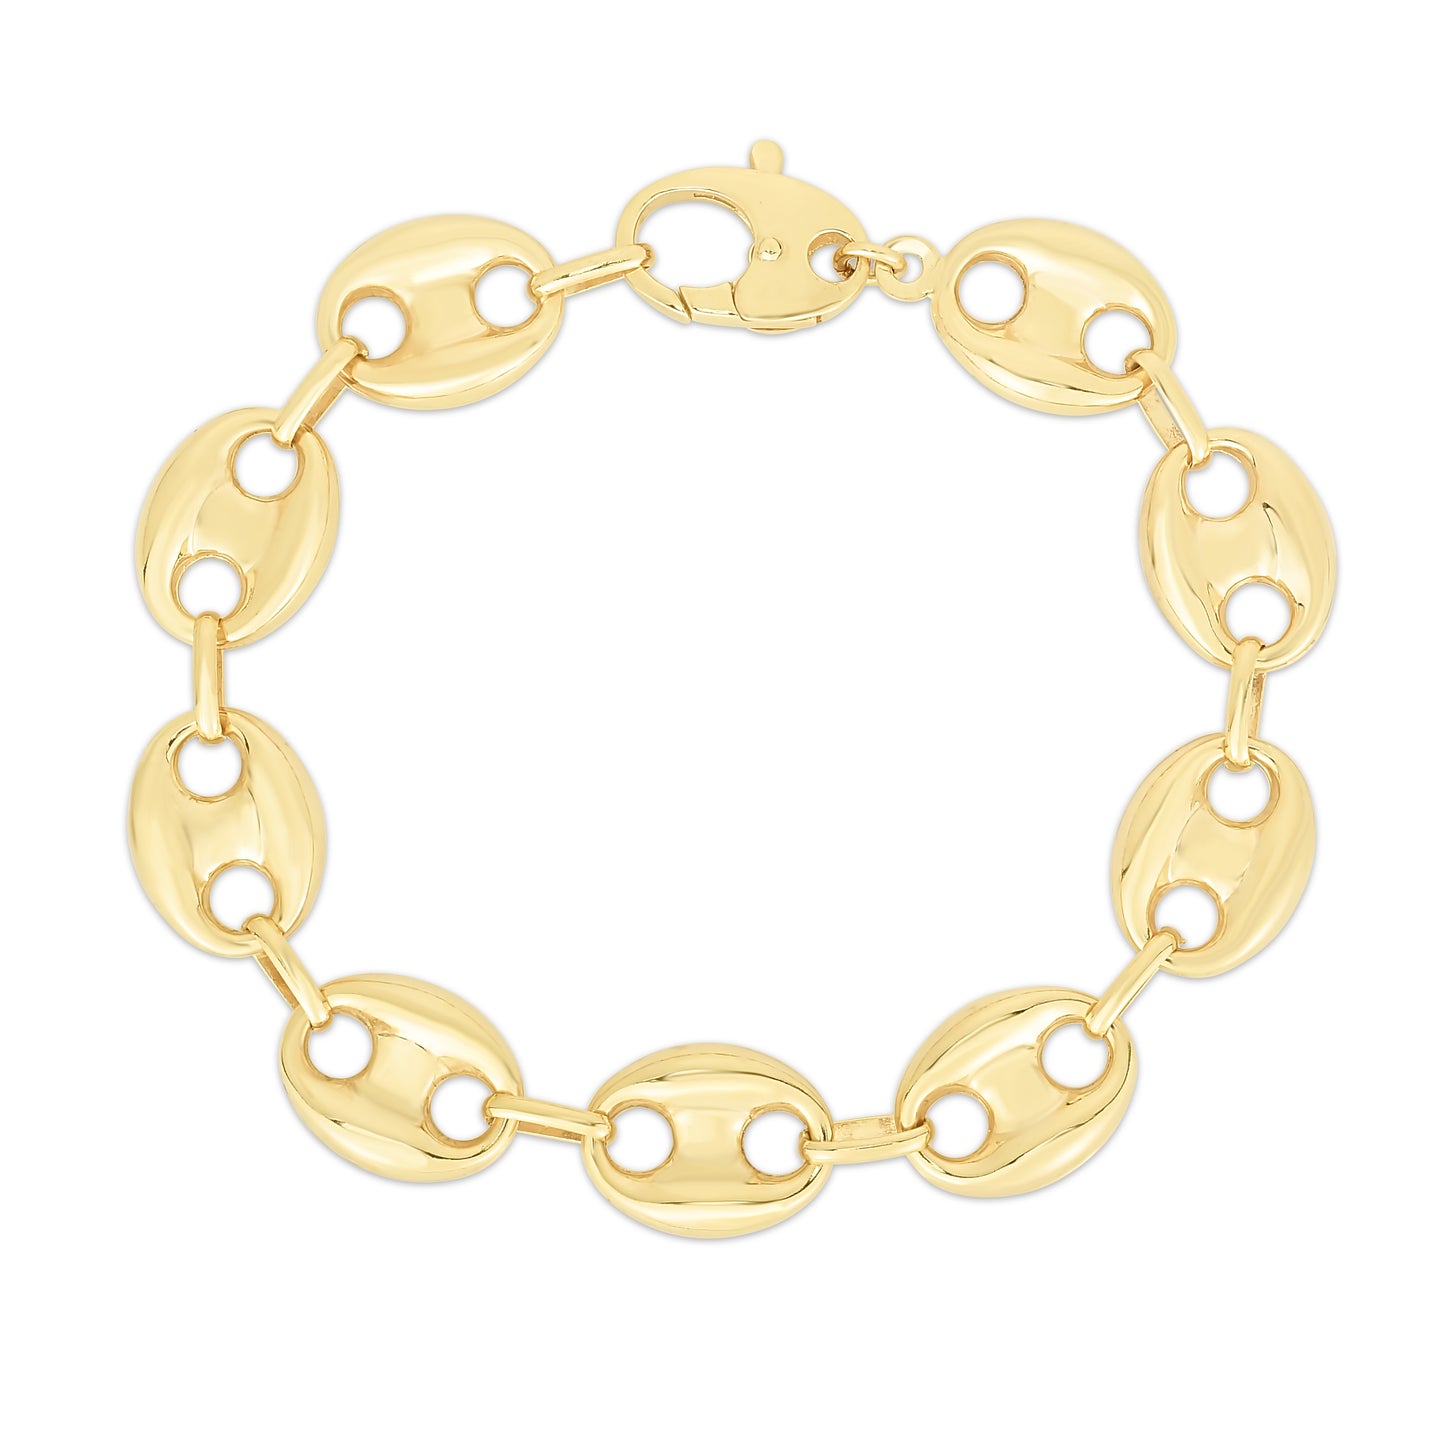 14K Gold 15mm Puffed Mariner Link Bracelet